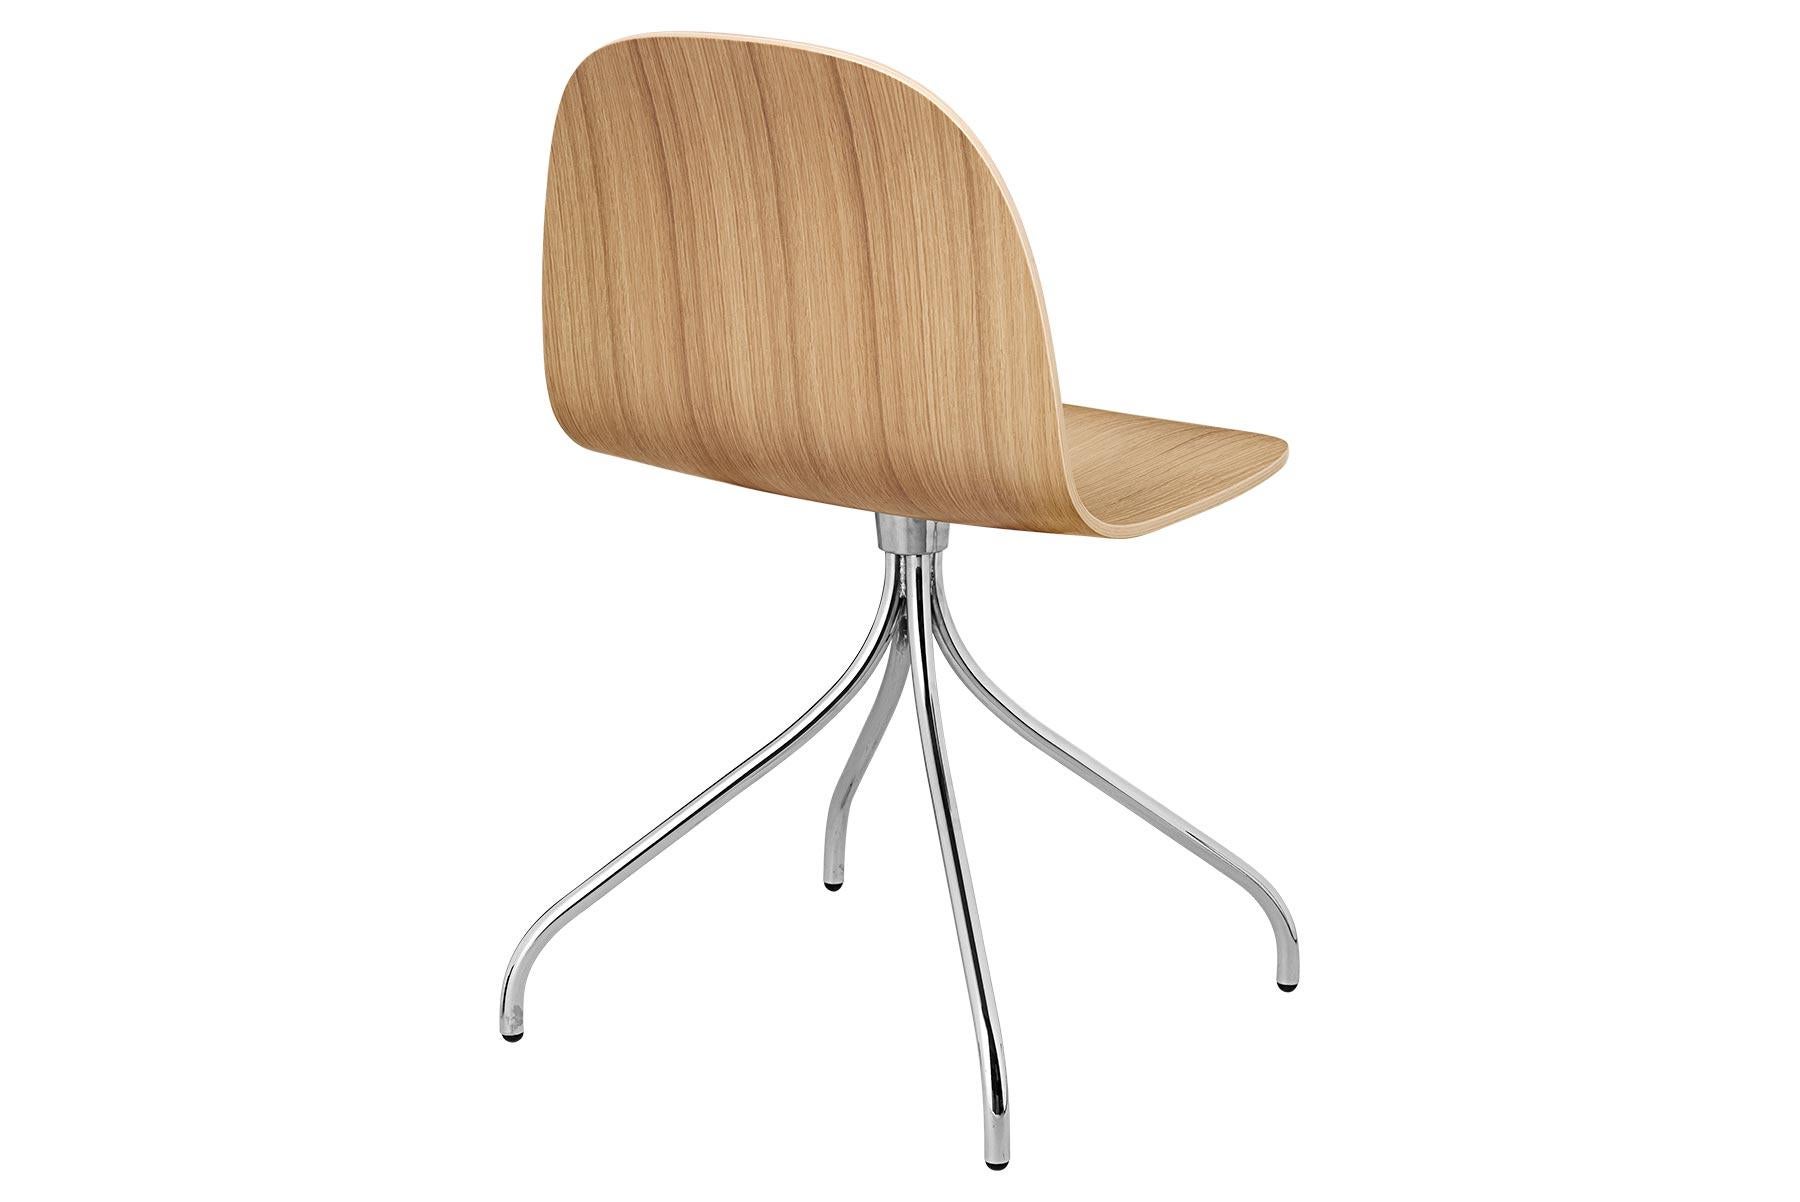 Der Gubi 2D Stuhl ist eine Serie von leichten Esszimmerstühlen aus laminiertem Furnier mit einem breiten Anwendungsspektrum in privaten und öffentlichen Räumen. Er ist eine Erweiterung des klassischen Gubi 3D-Stuhls und zeichnet sich durch einen